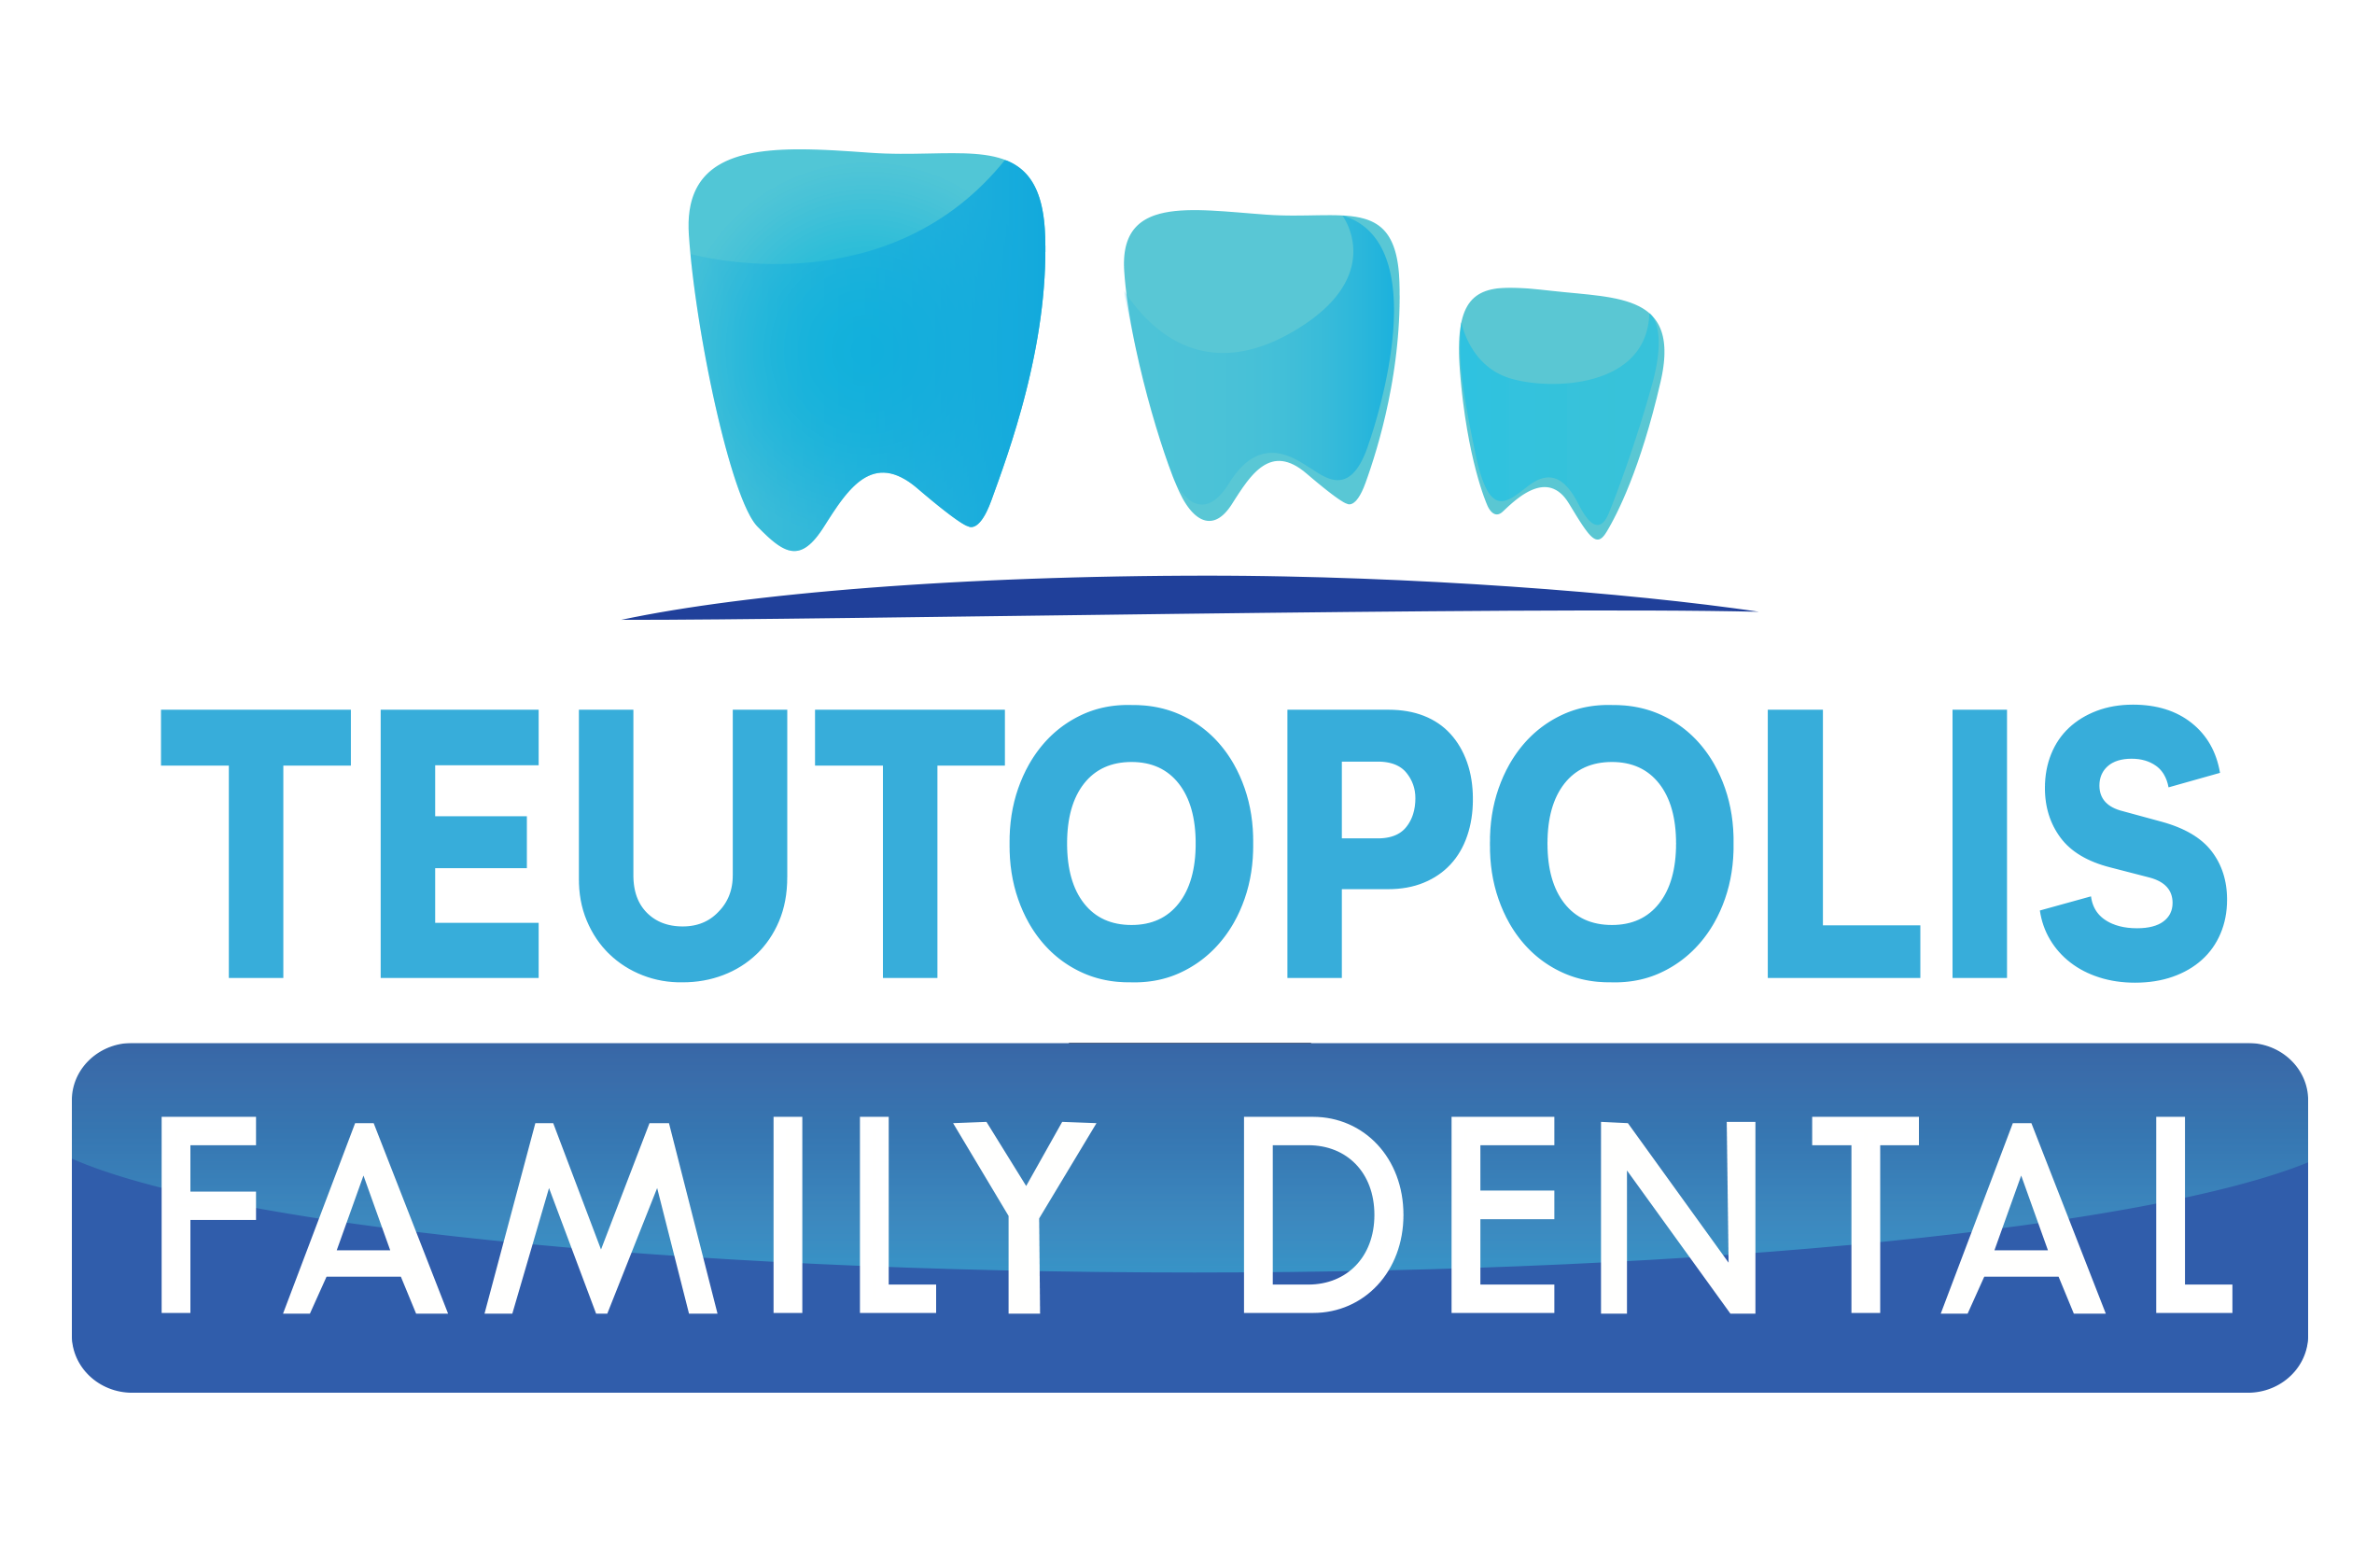 Teutopolis Family Dental